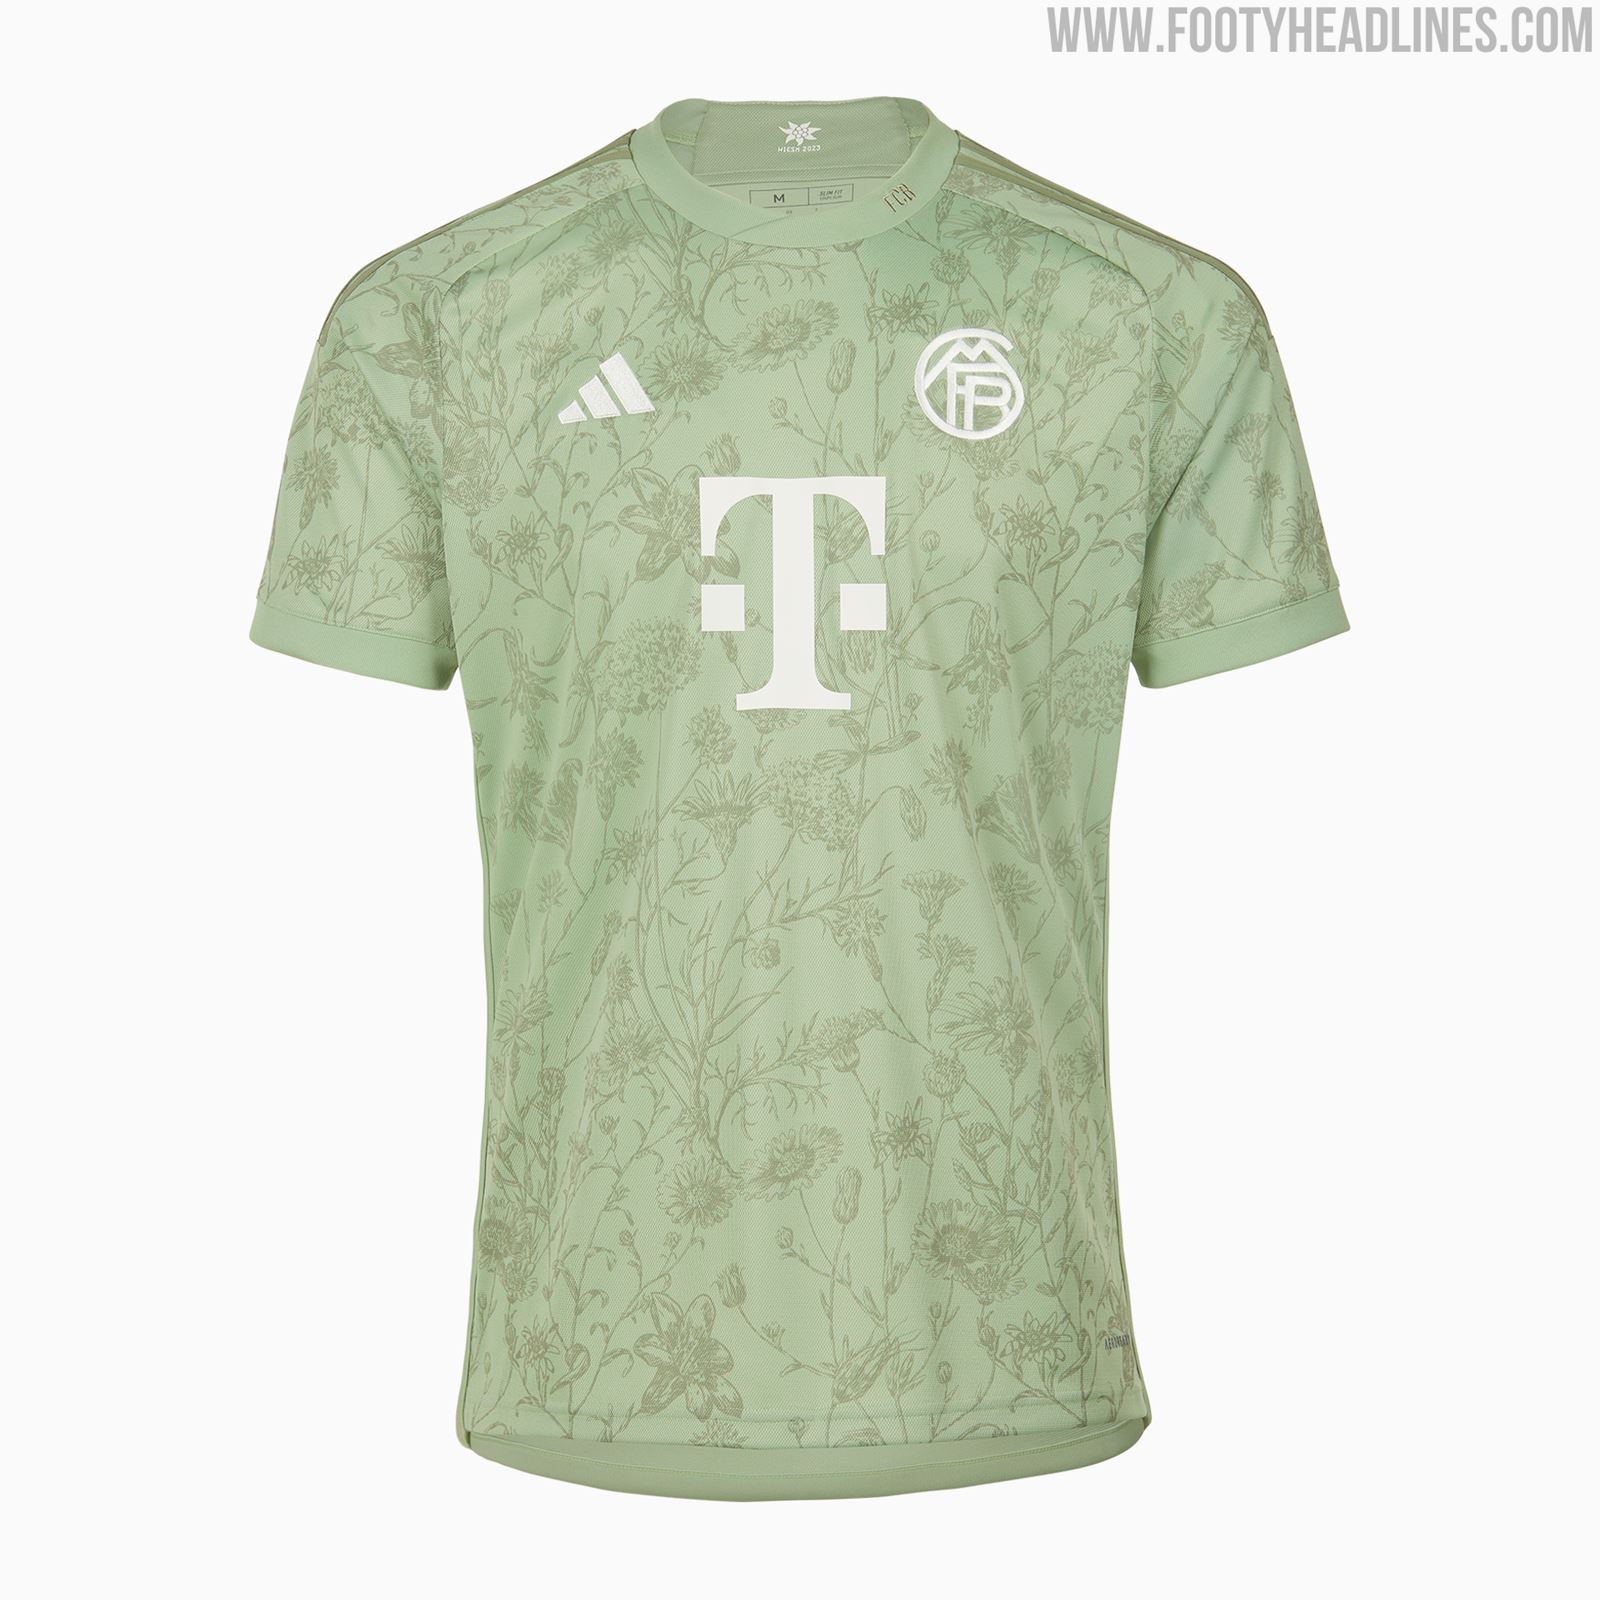 📸The new Bayern Munich shirt for the next Oktoberfest.